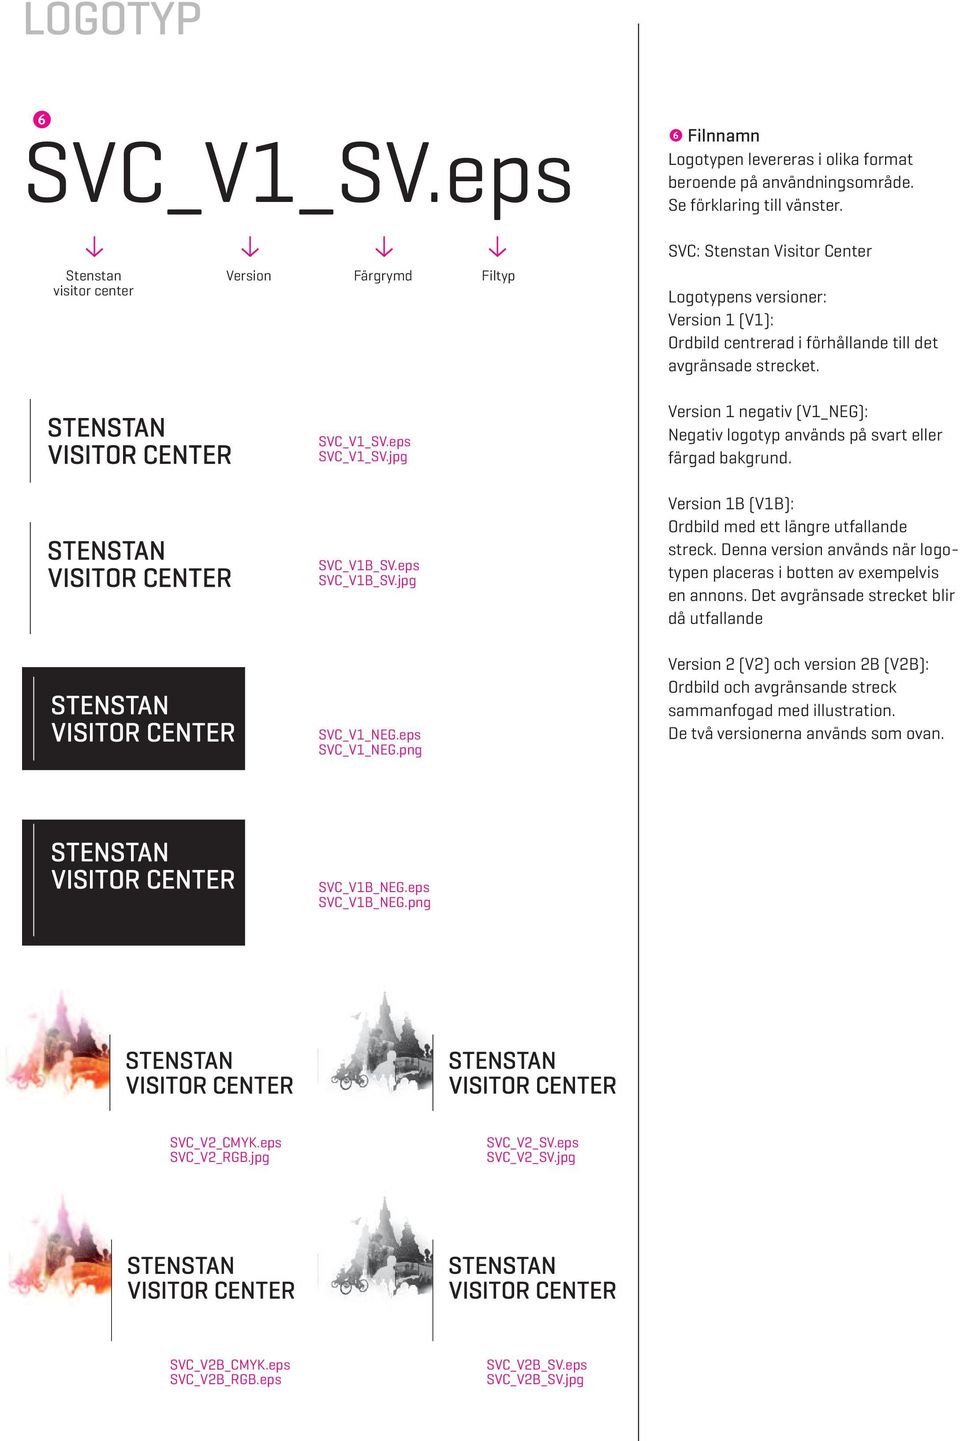 SVC: Stenstan Visitor Center Logotypens versioner: Version 1 (V1): Ordbild centrerad i förhållande till det avgränsade strecket.